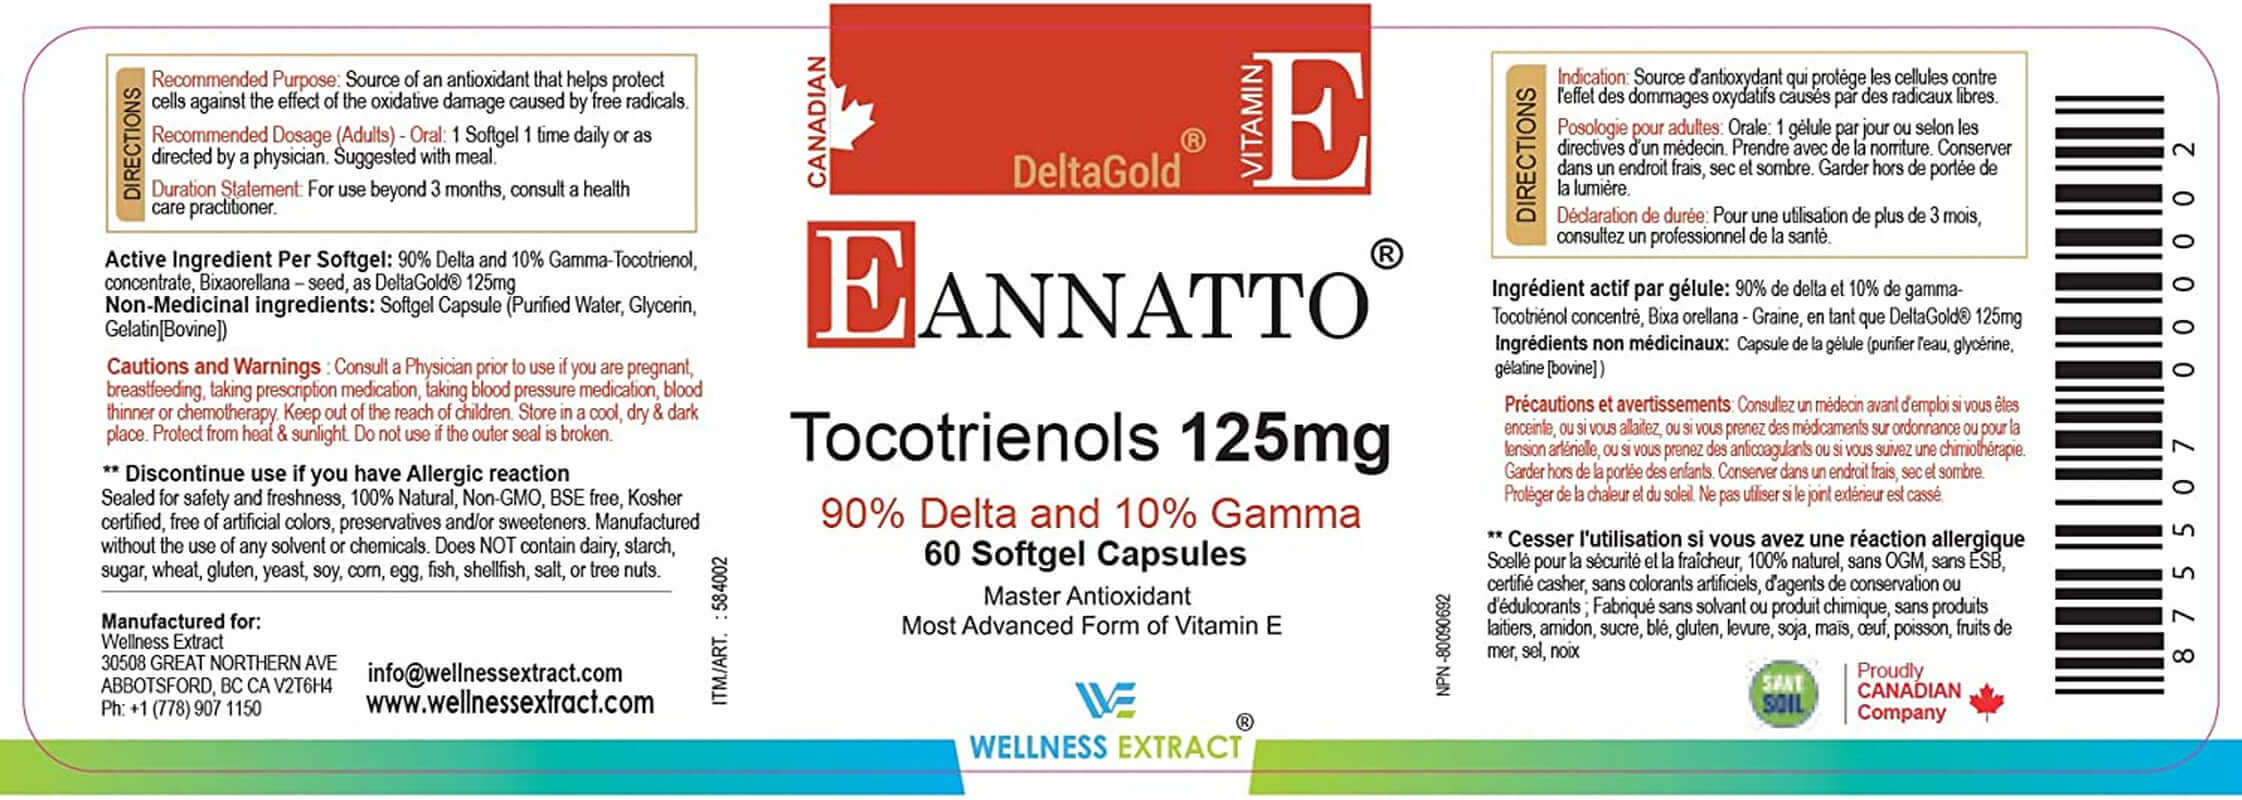 E Annatto Tocotrienols Deltagold Vitamin E Tocotrienols Supplements Softgel Capsules, Tocopherol Free, Supports Immune Health & Antioxidant Health (90% Delta & 10% Gamma) (125 MG 30 Softgels) - vitamenstore.com